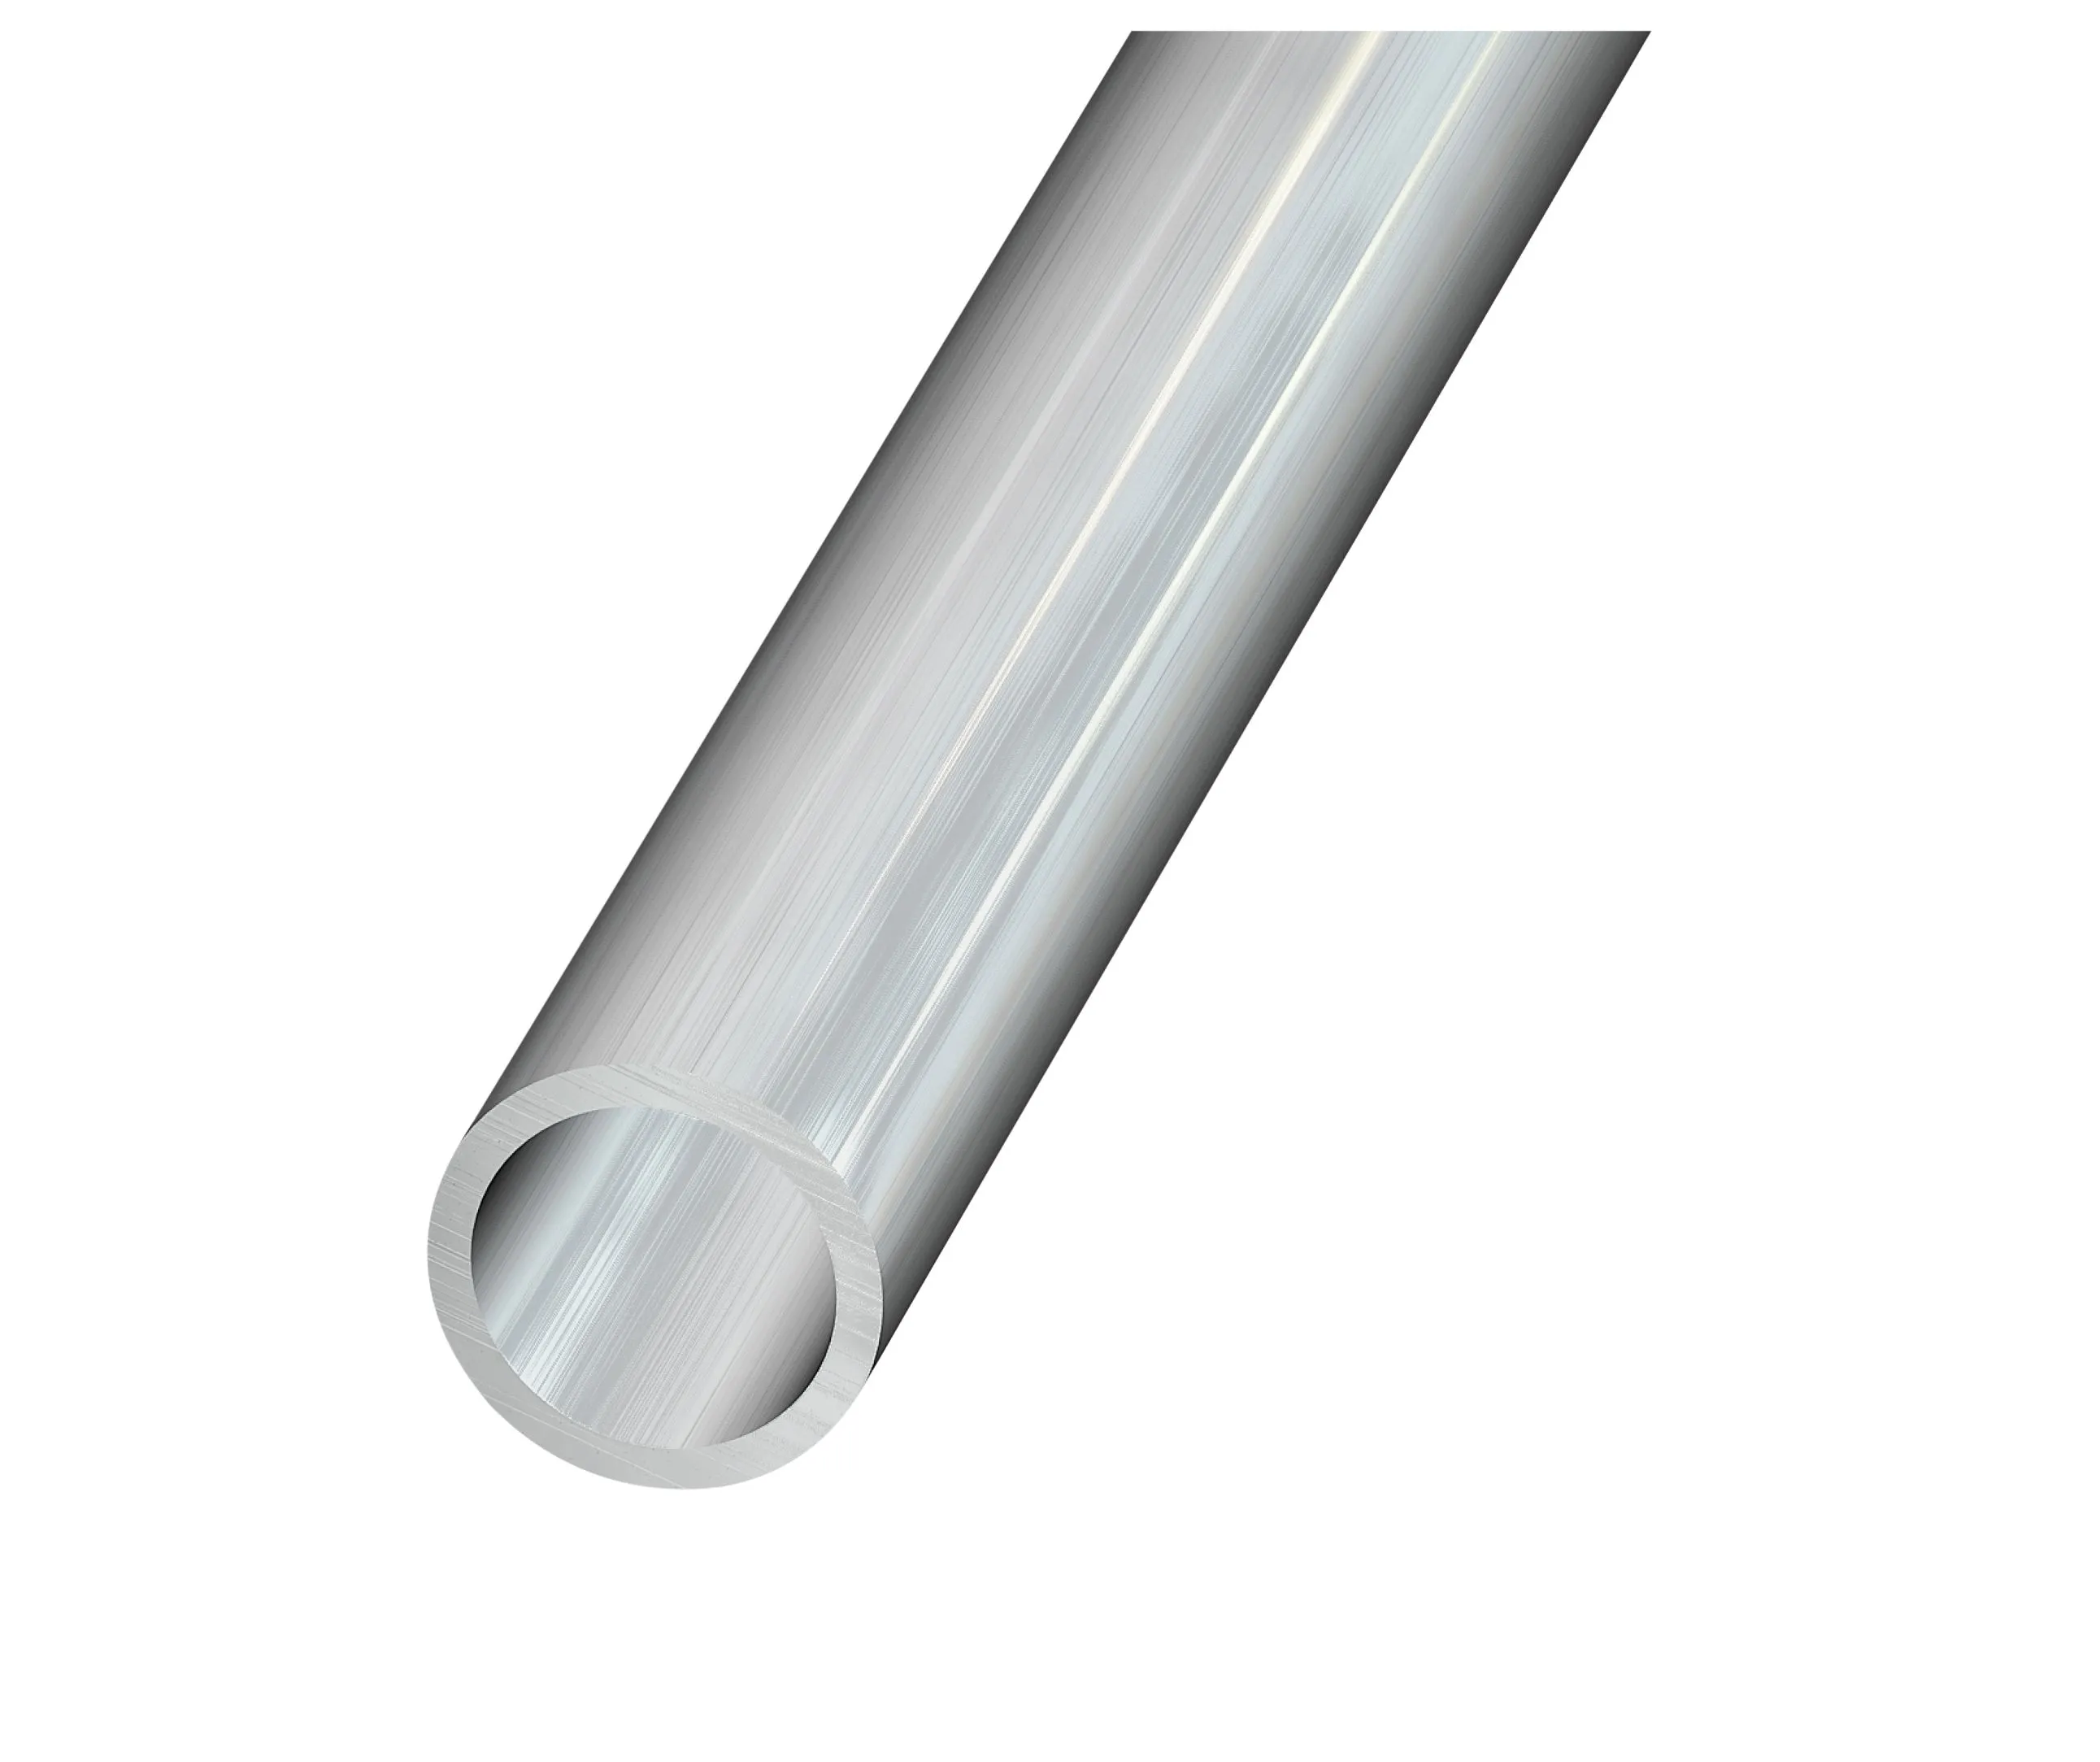 Aluminium Round Tube, (L)1m (Dia)16mm